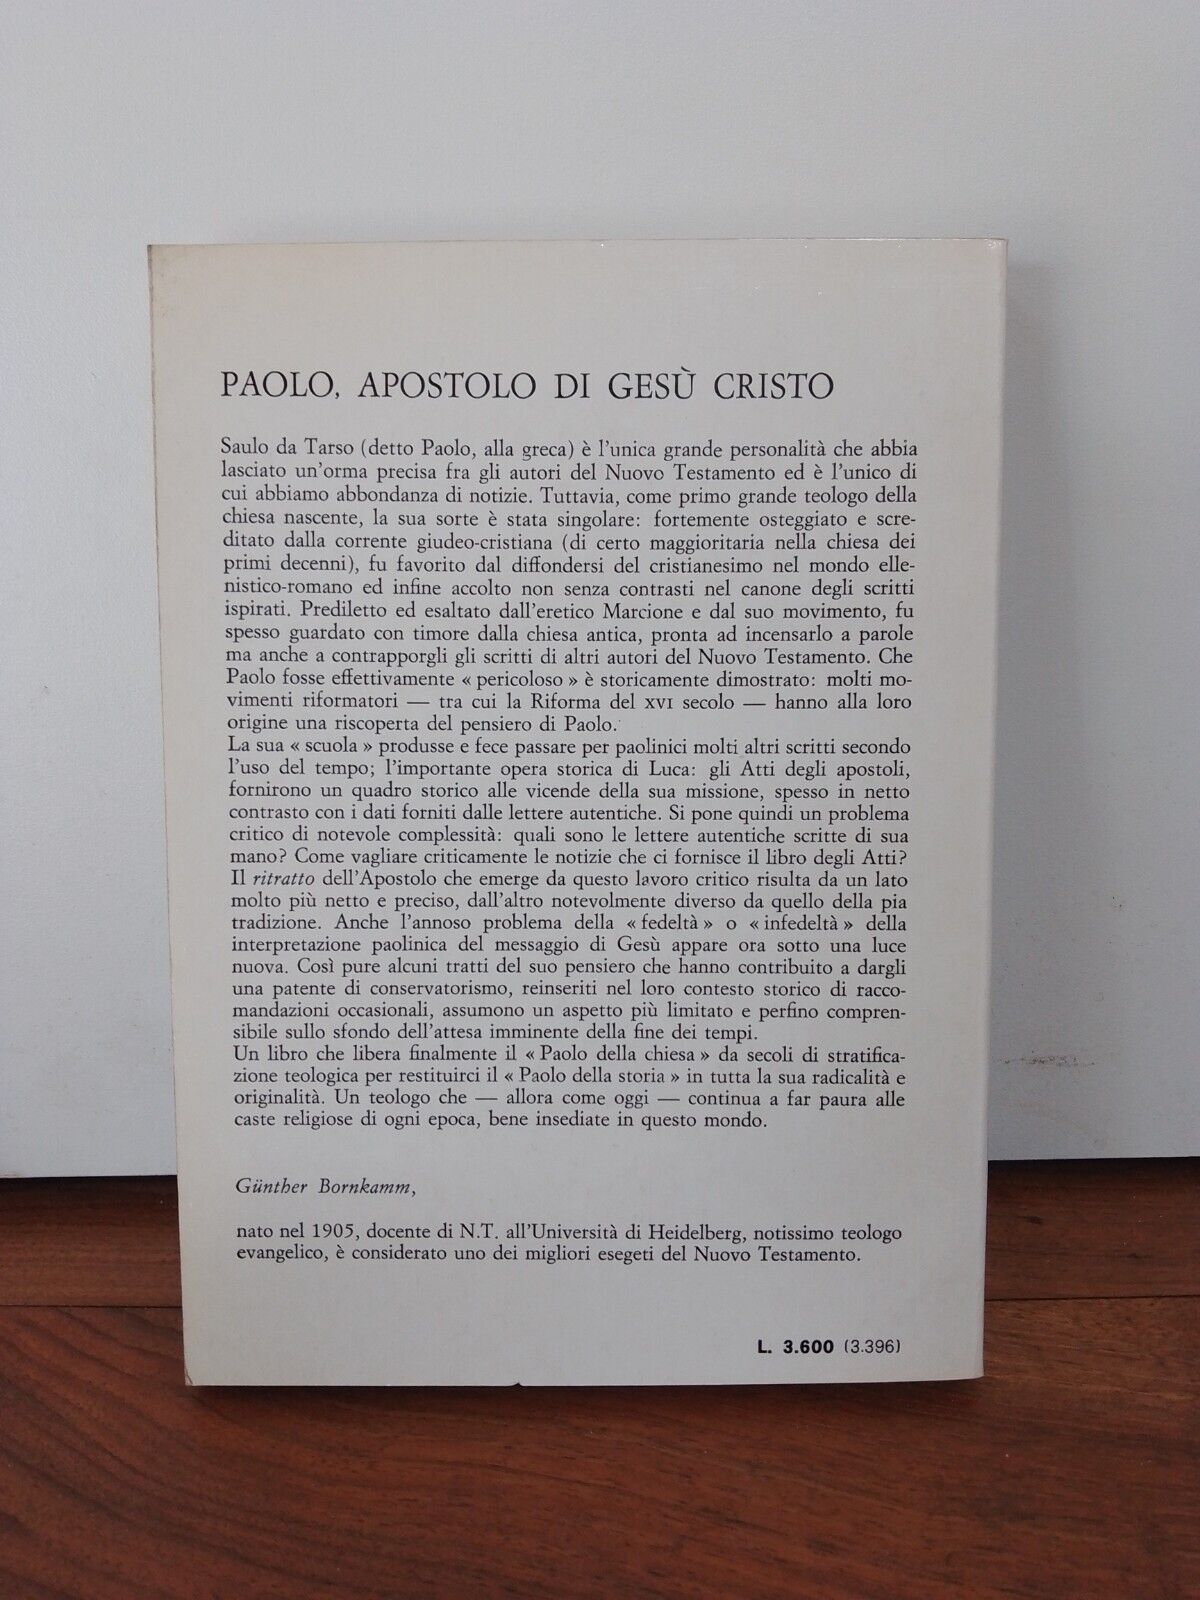 PAOLO APOSTOLO DI GESU' CRISTO, G.  Bornkamm, CLAUDIANA 1982, SOLA SCRIPTURA